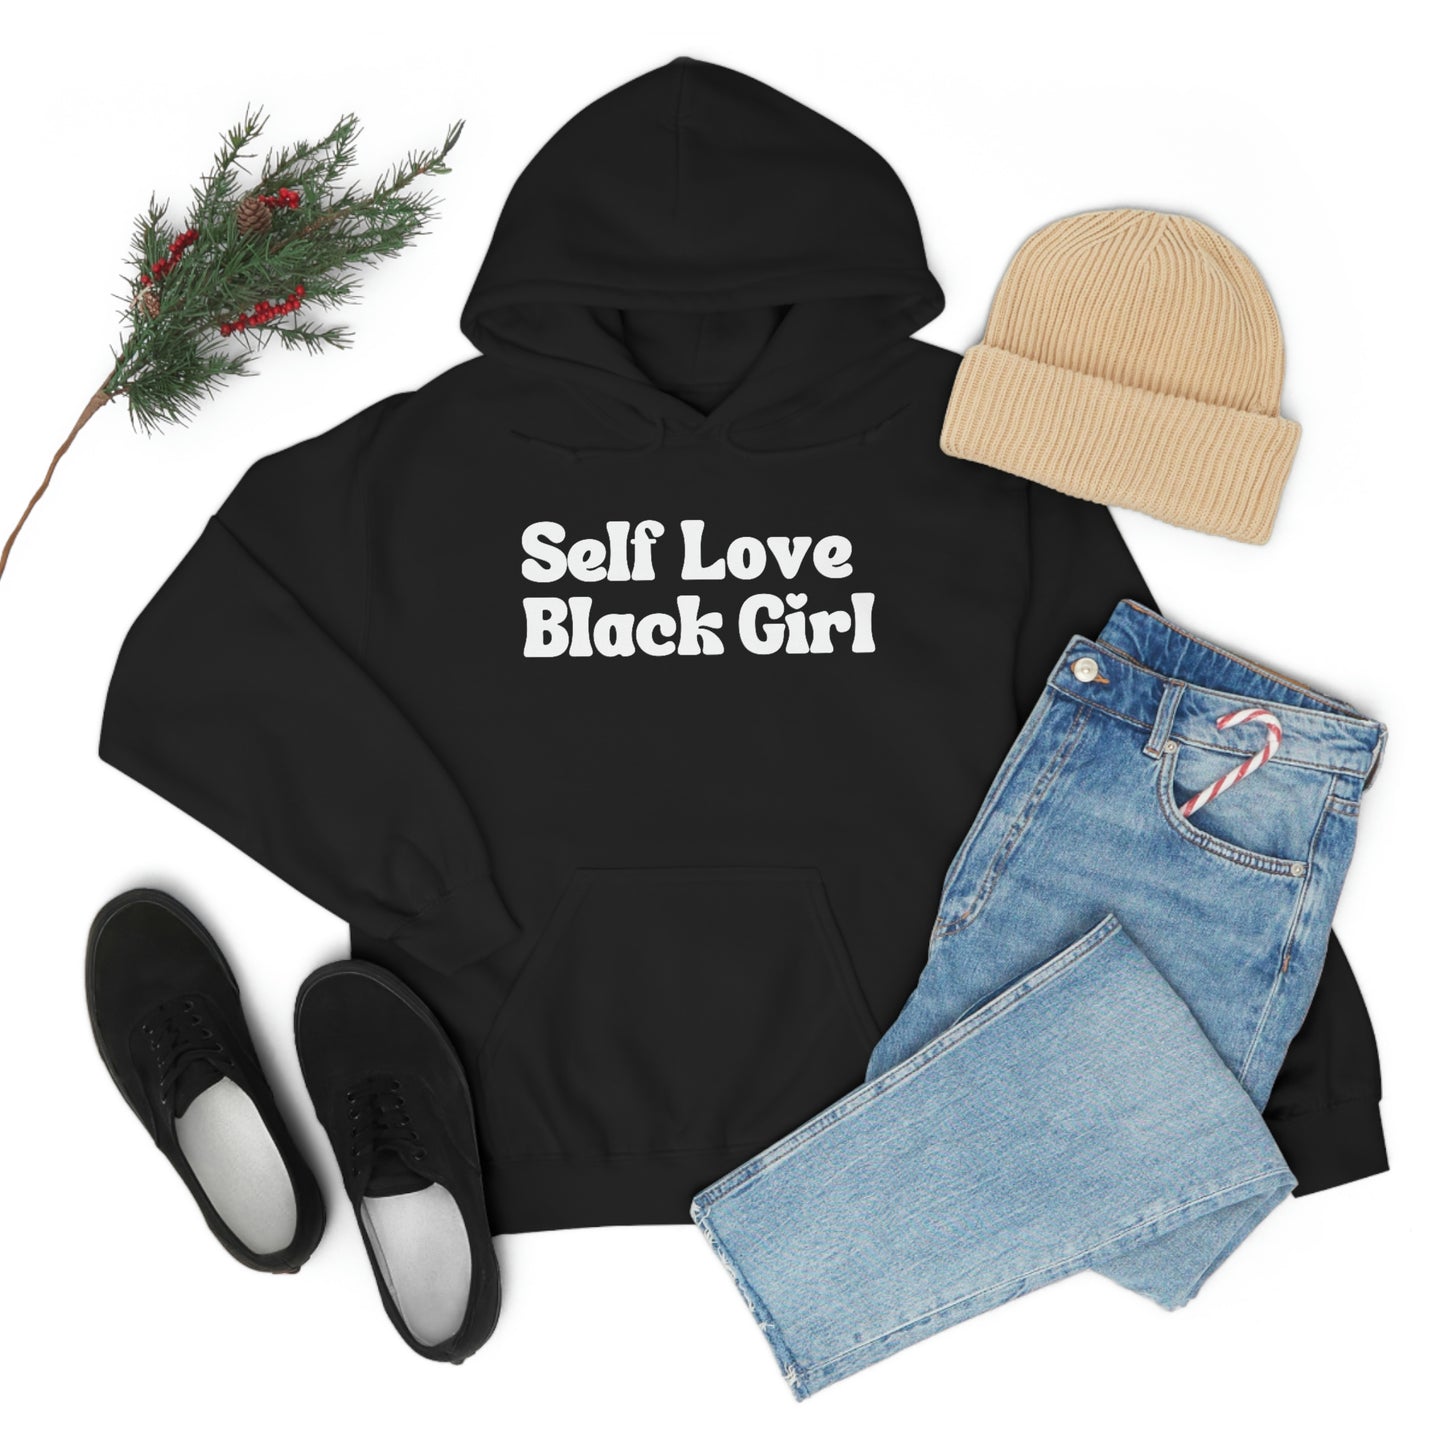 Self Love Black Girl Unisex Hoodie